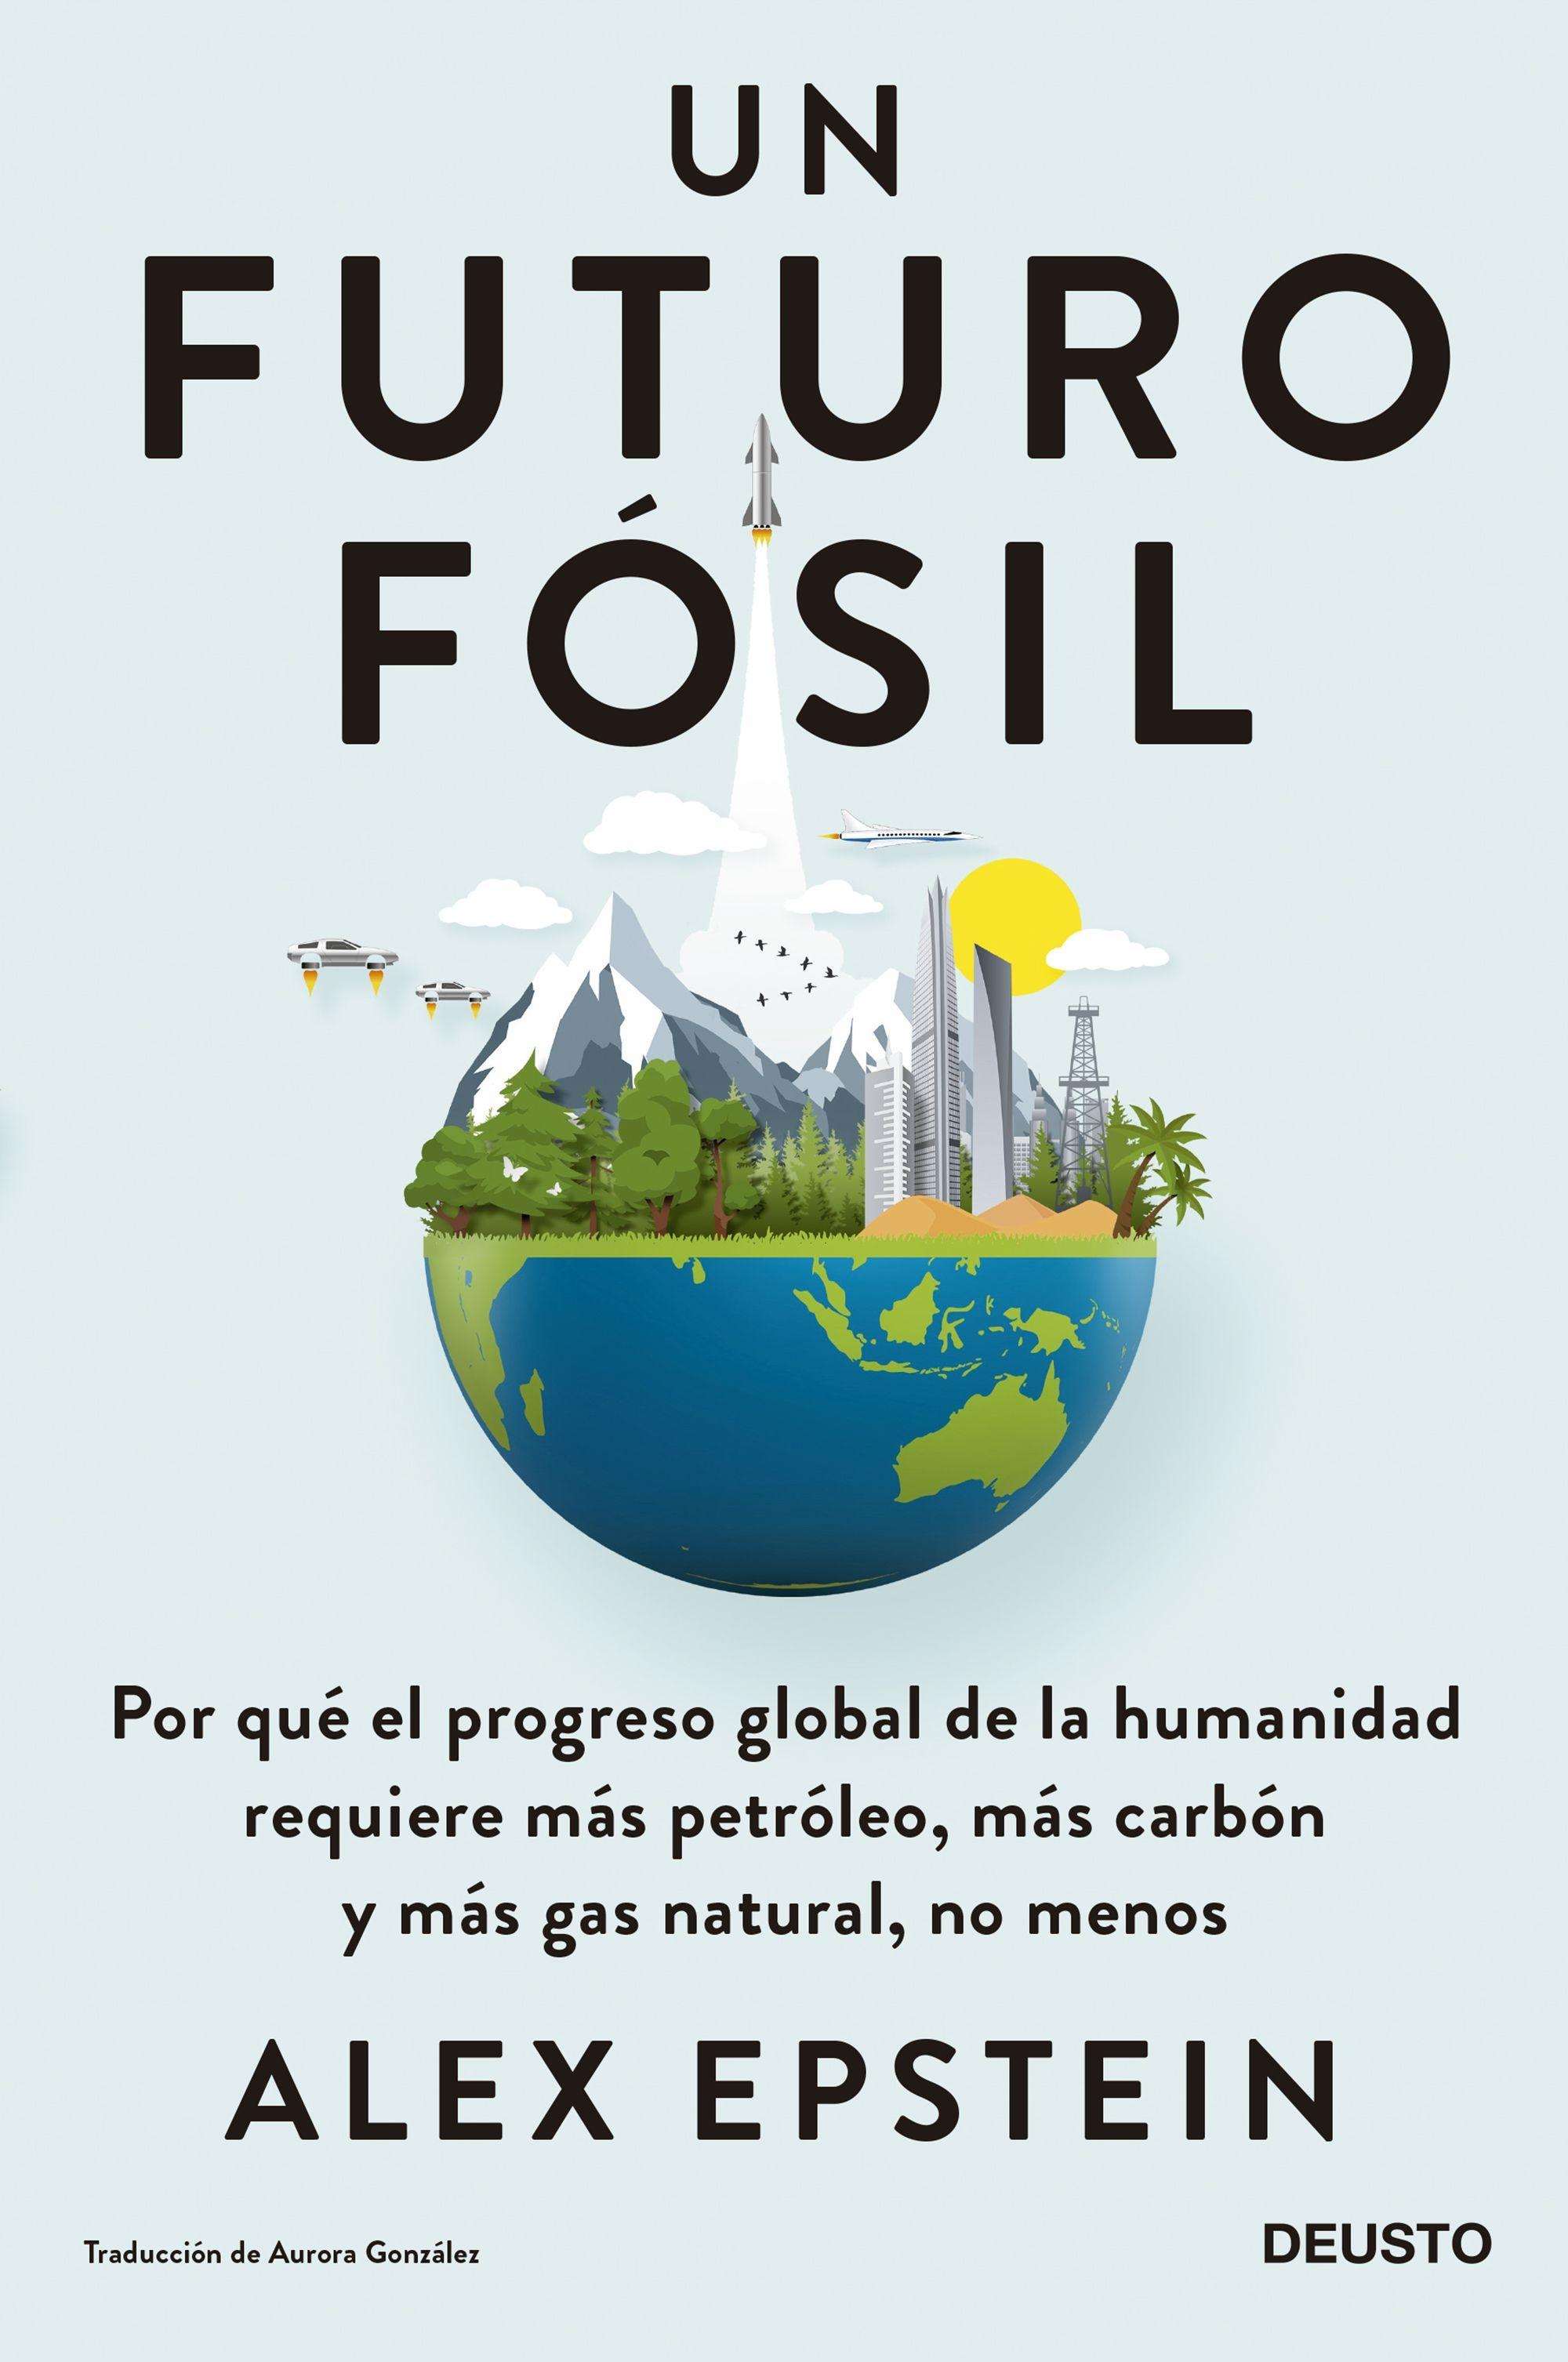 Un futuro fósil "Por qué el progreso global de la humanidad requiere más petróleo, más ca"